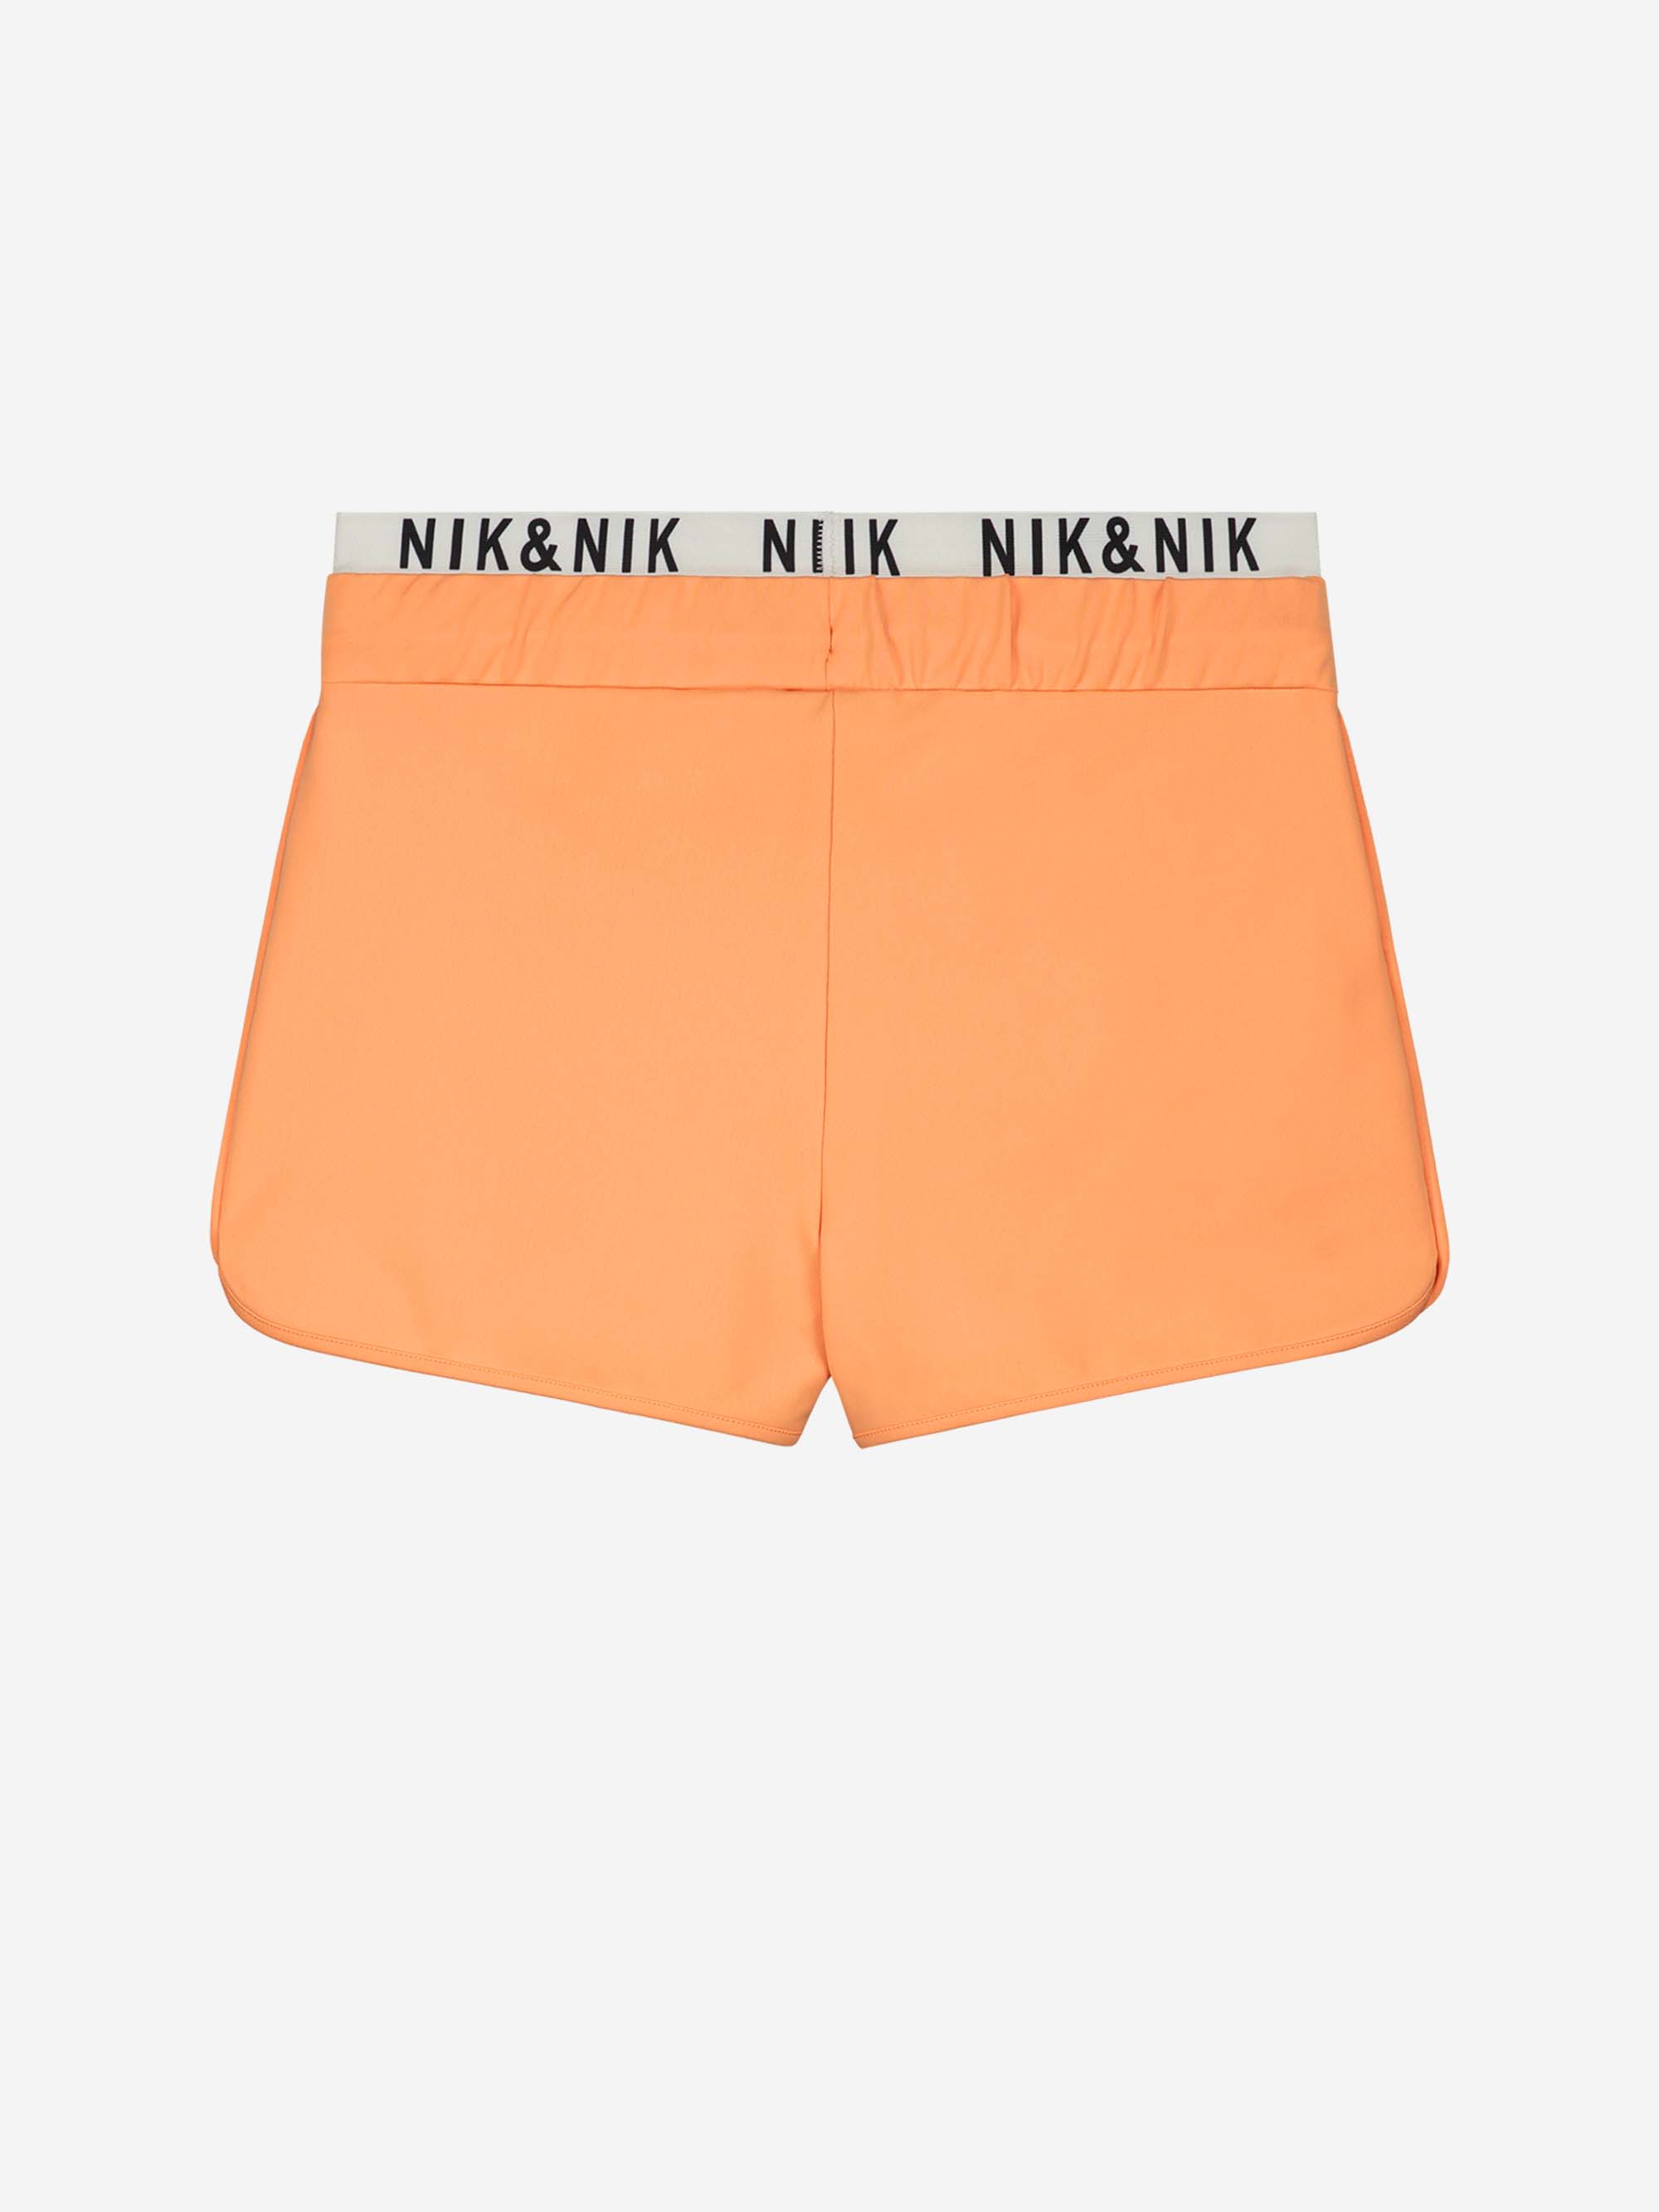 Nik & Nik Jentl Shorts